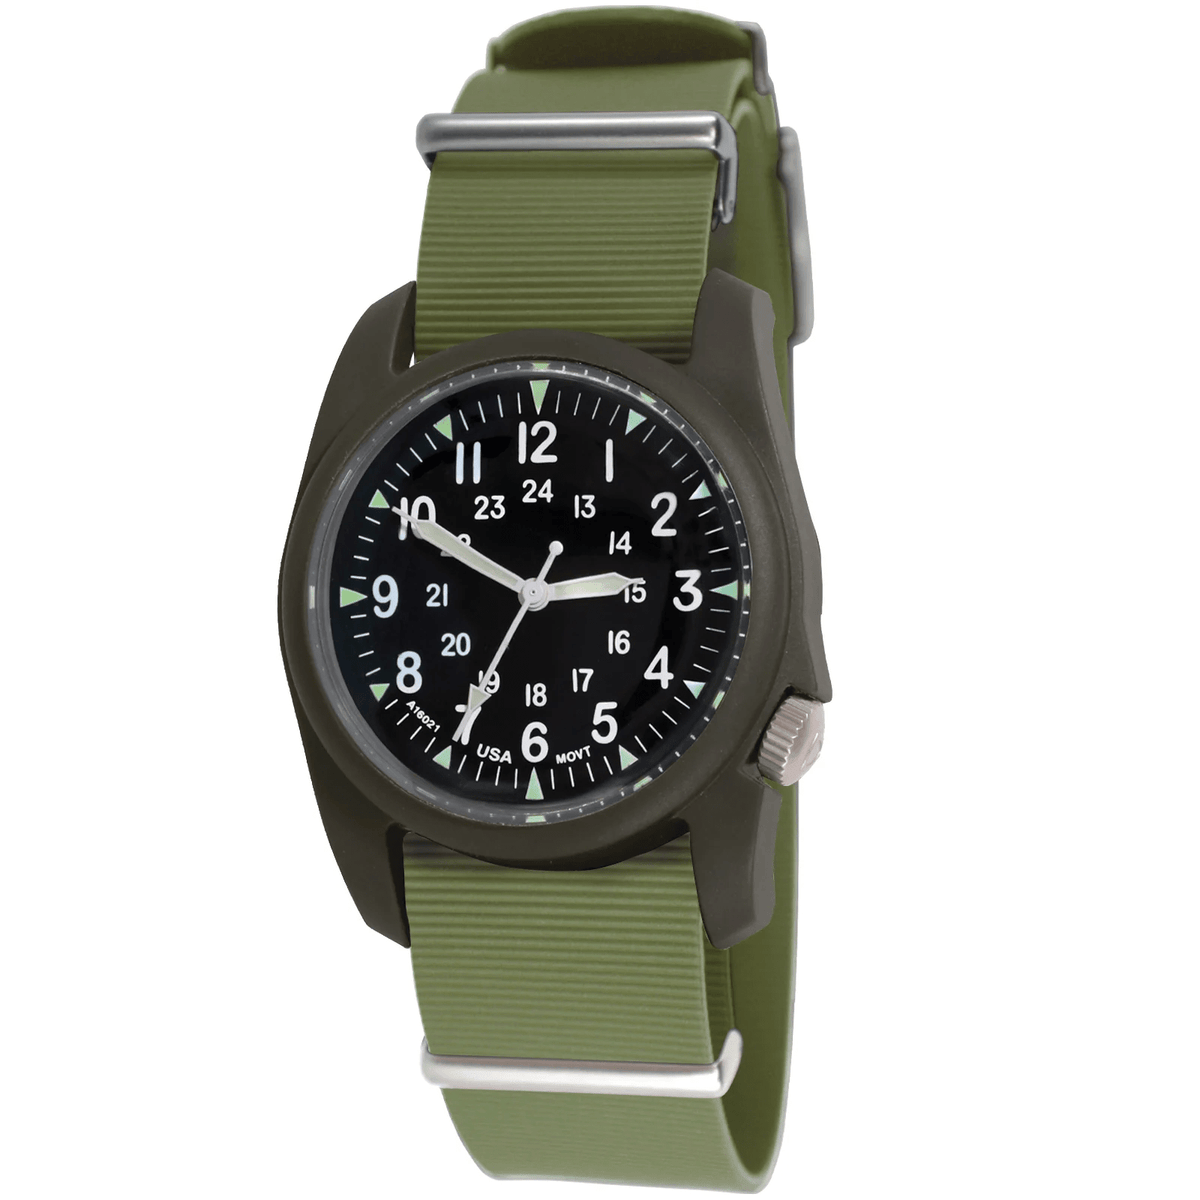 Bertucci A-2RA Retroform Nato Olive Rubber Men's Watch 11604